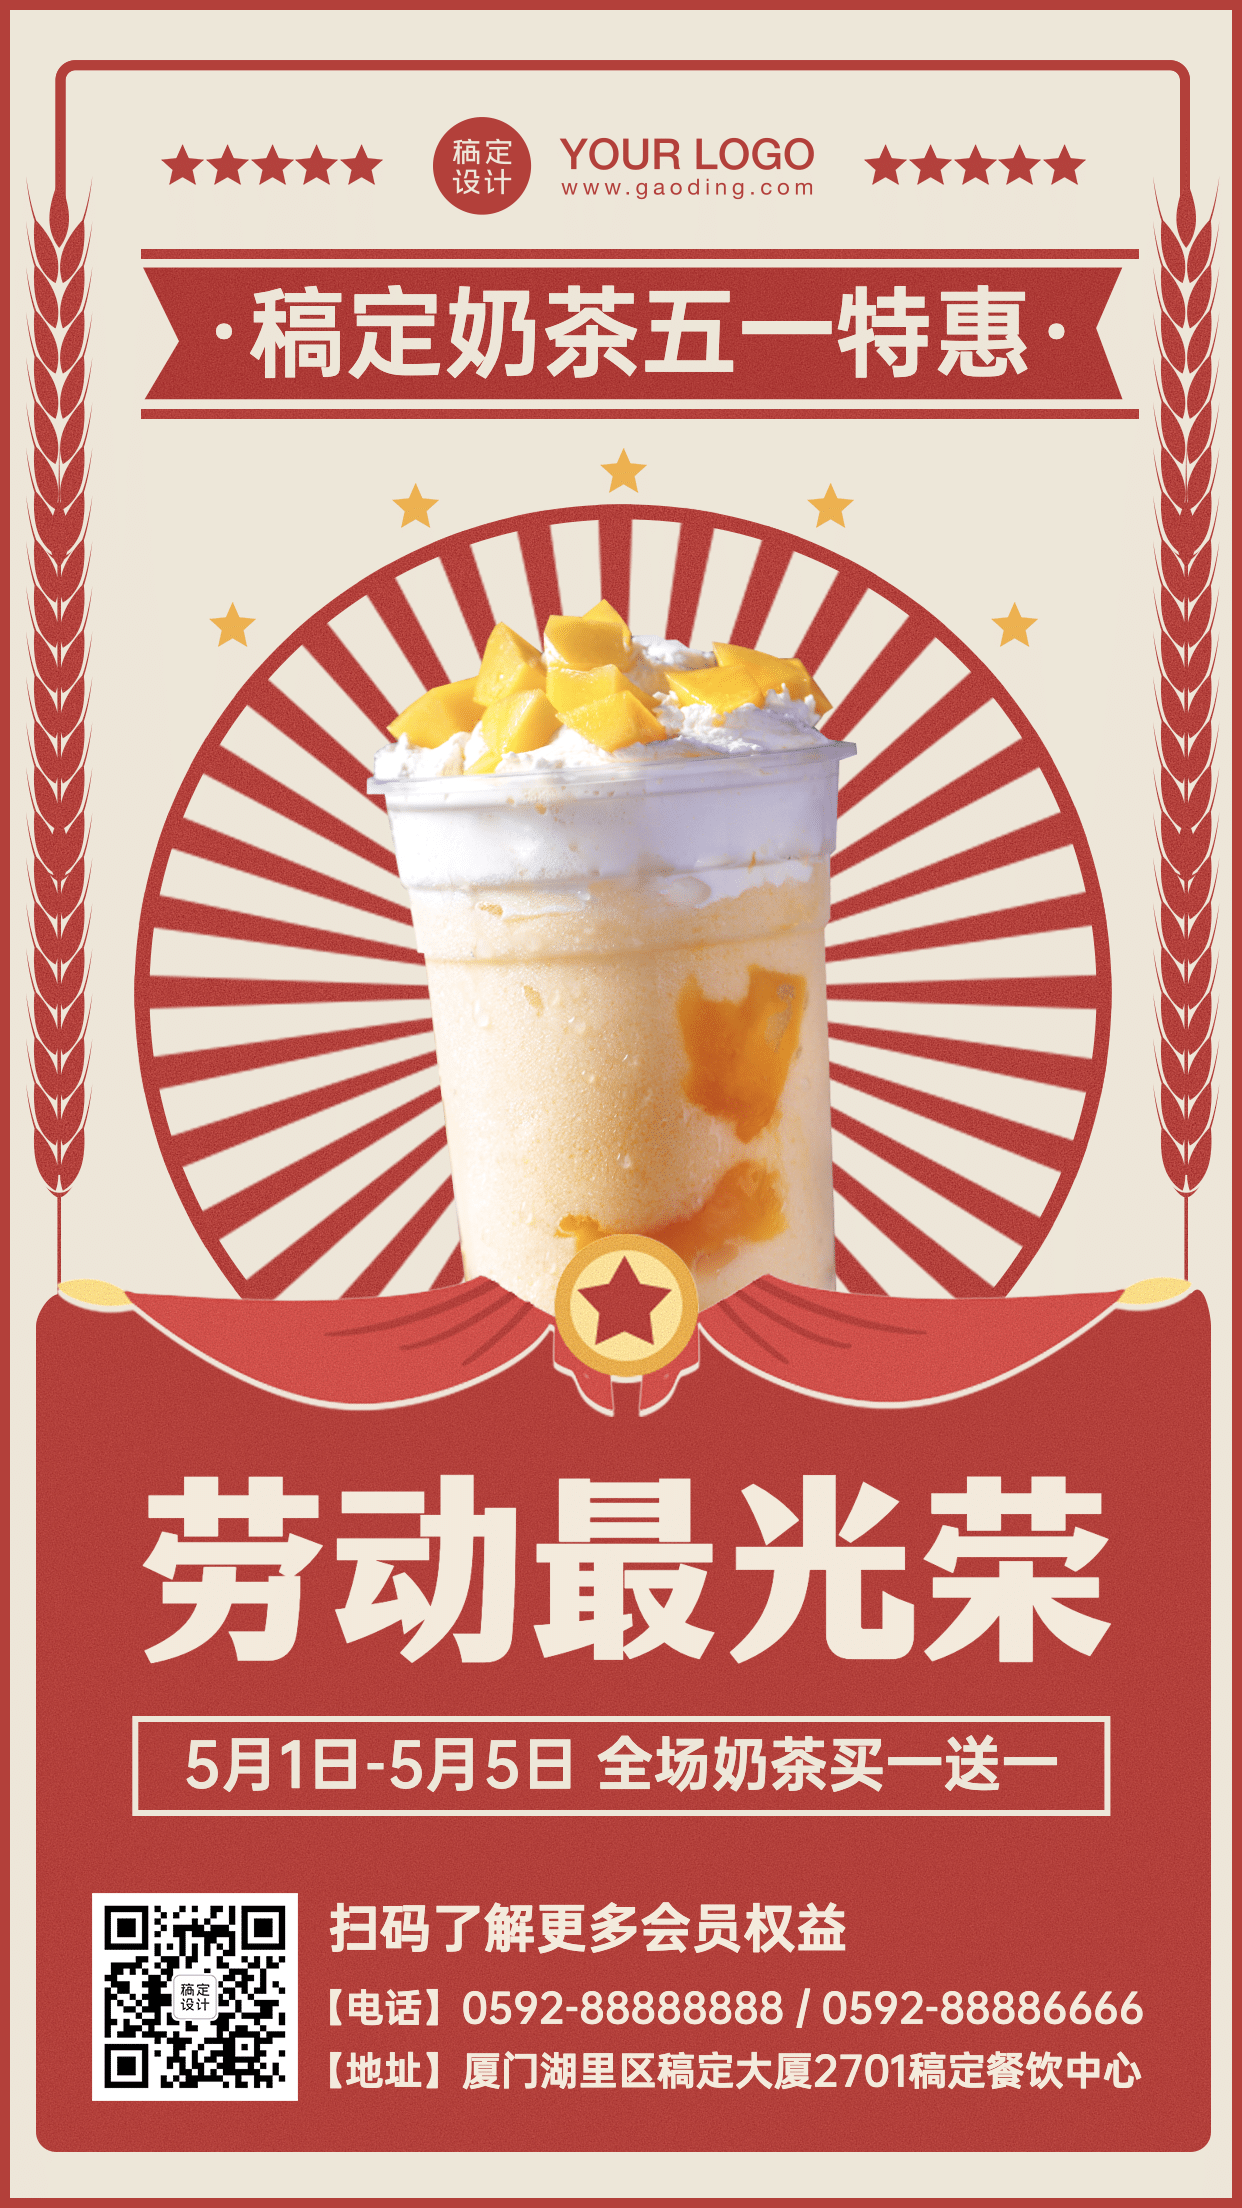 劳动节餐饮奶茶促销活动海报